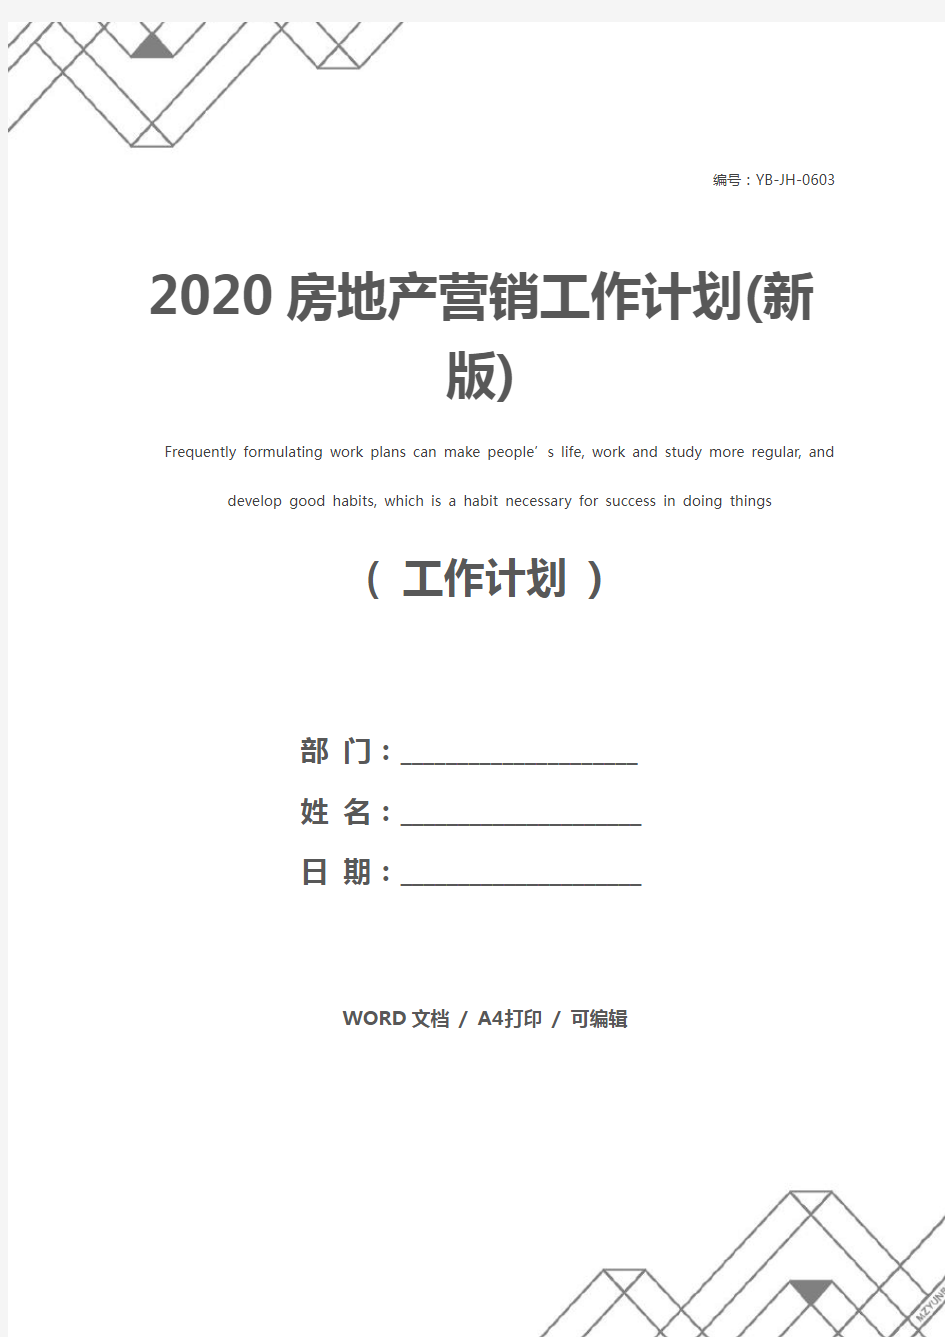 2020房地产营销工作计划(新版)